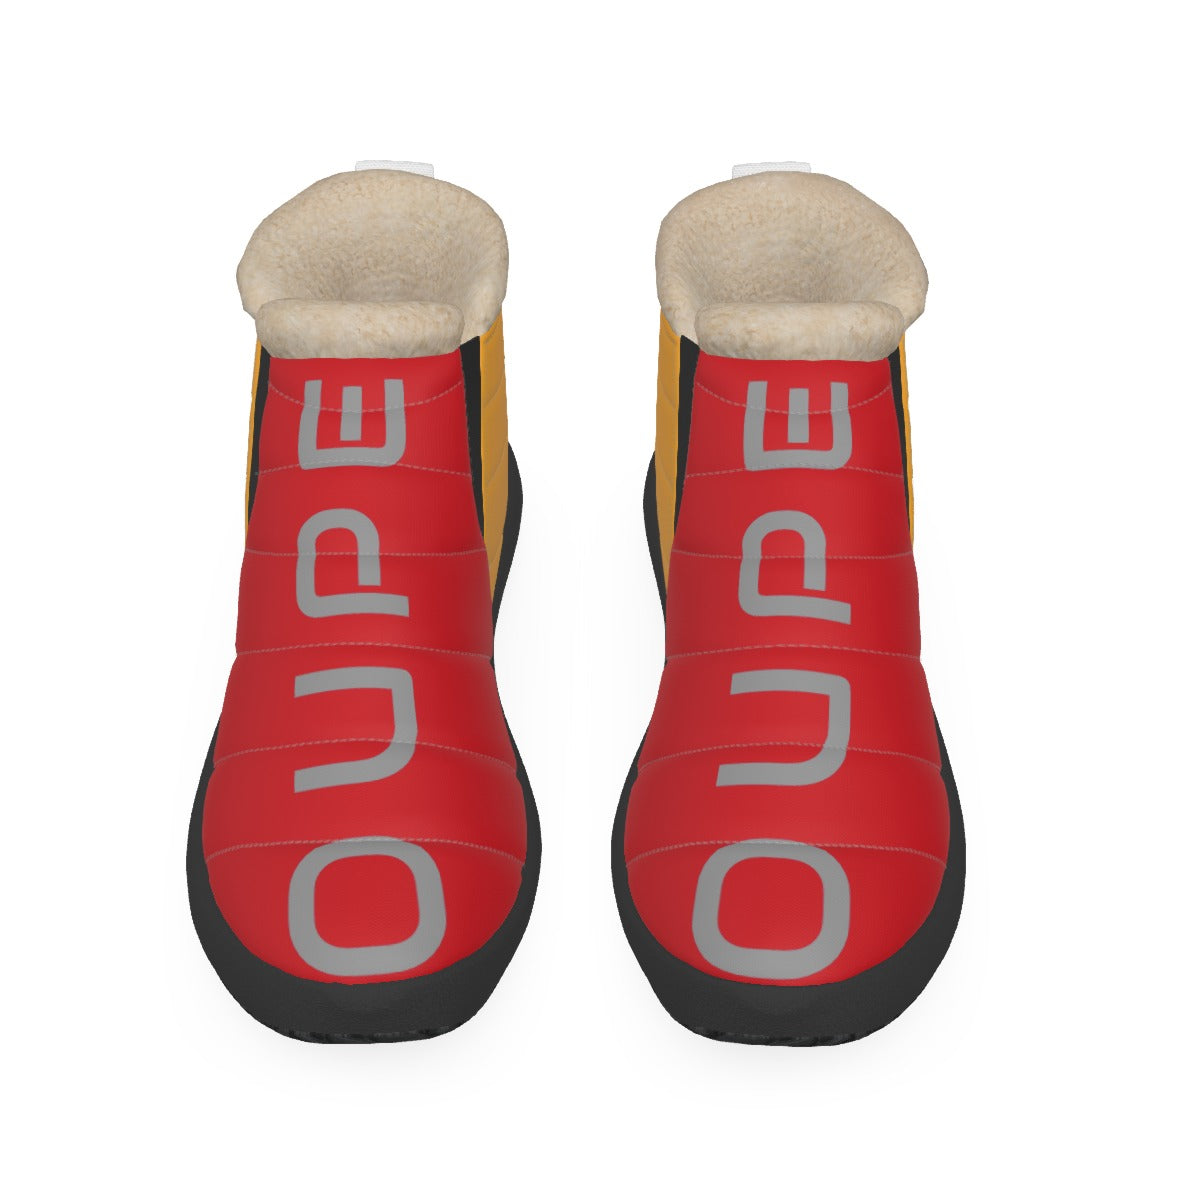 OUPE Men's Plush Boots